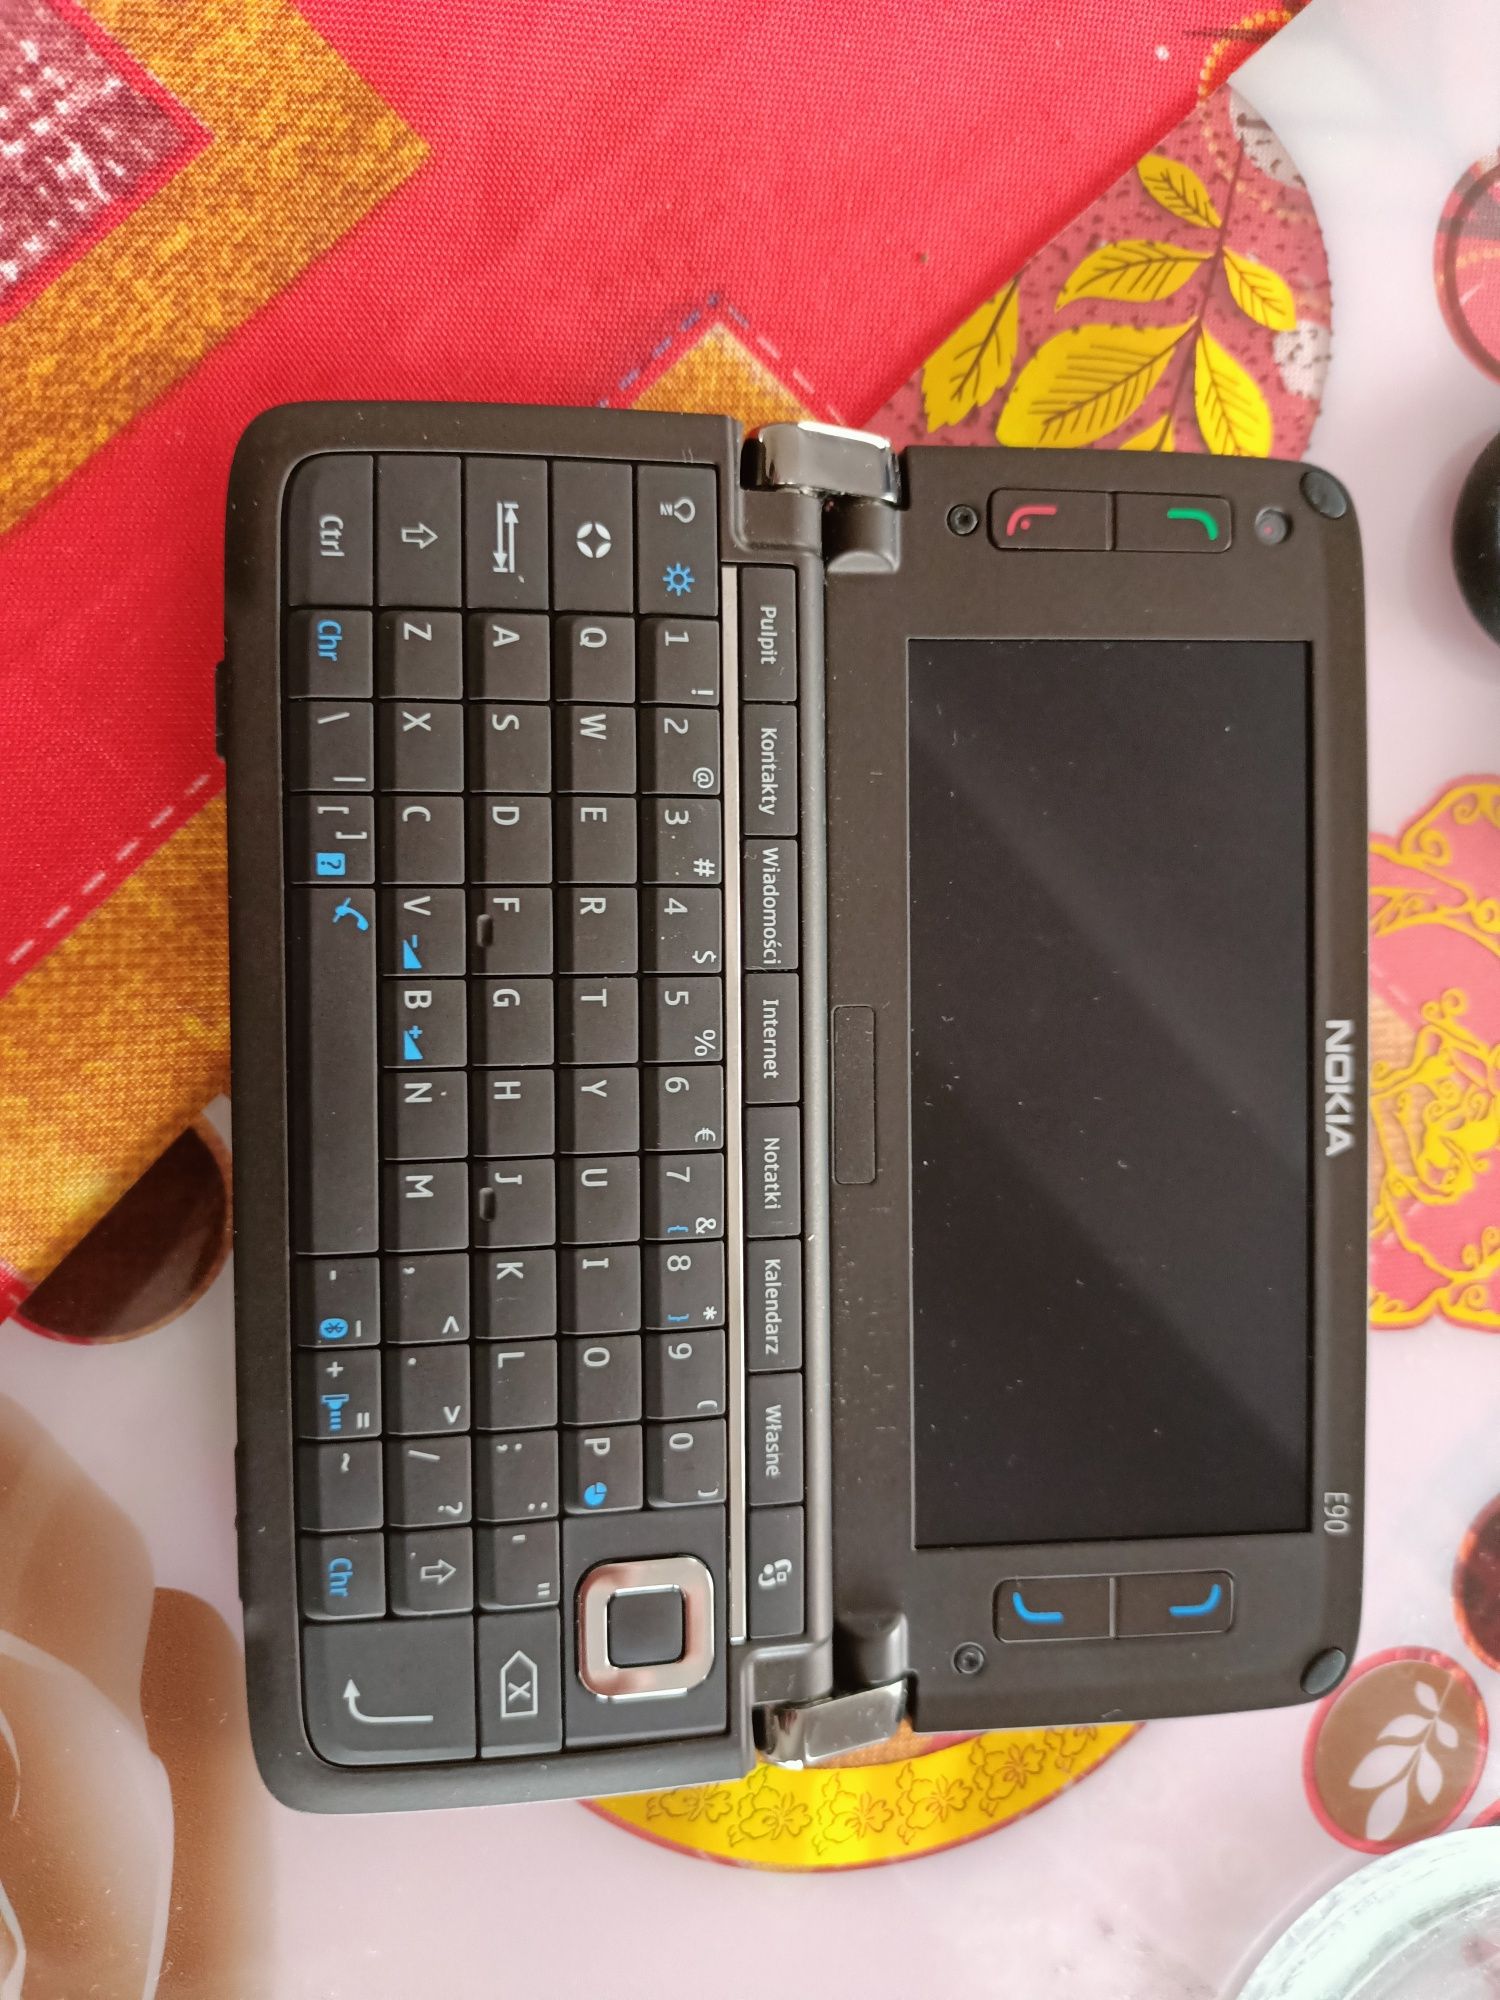 Nokia E90  comunicator